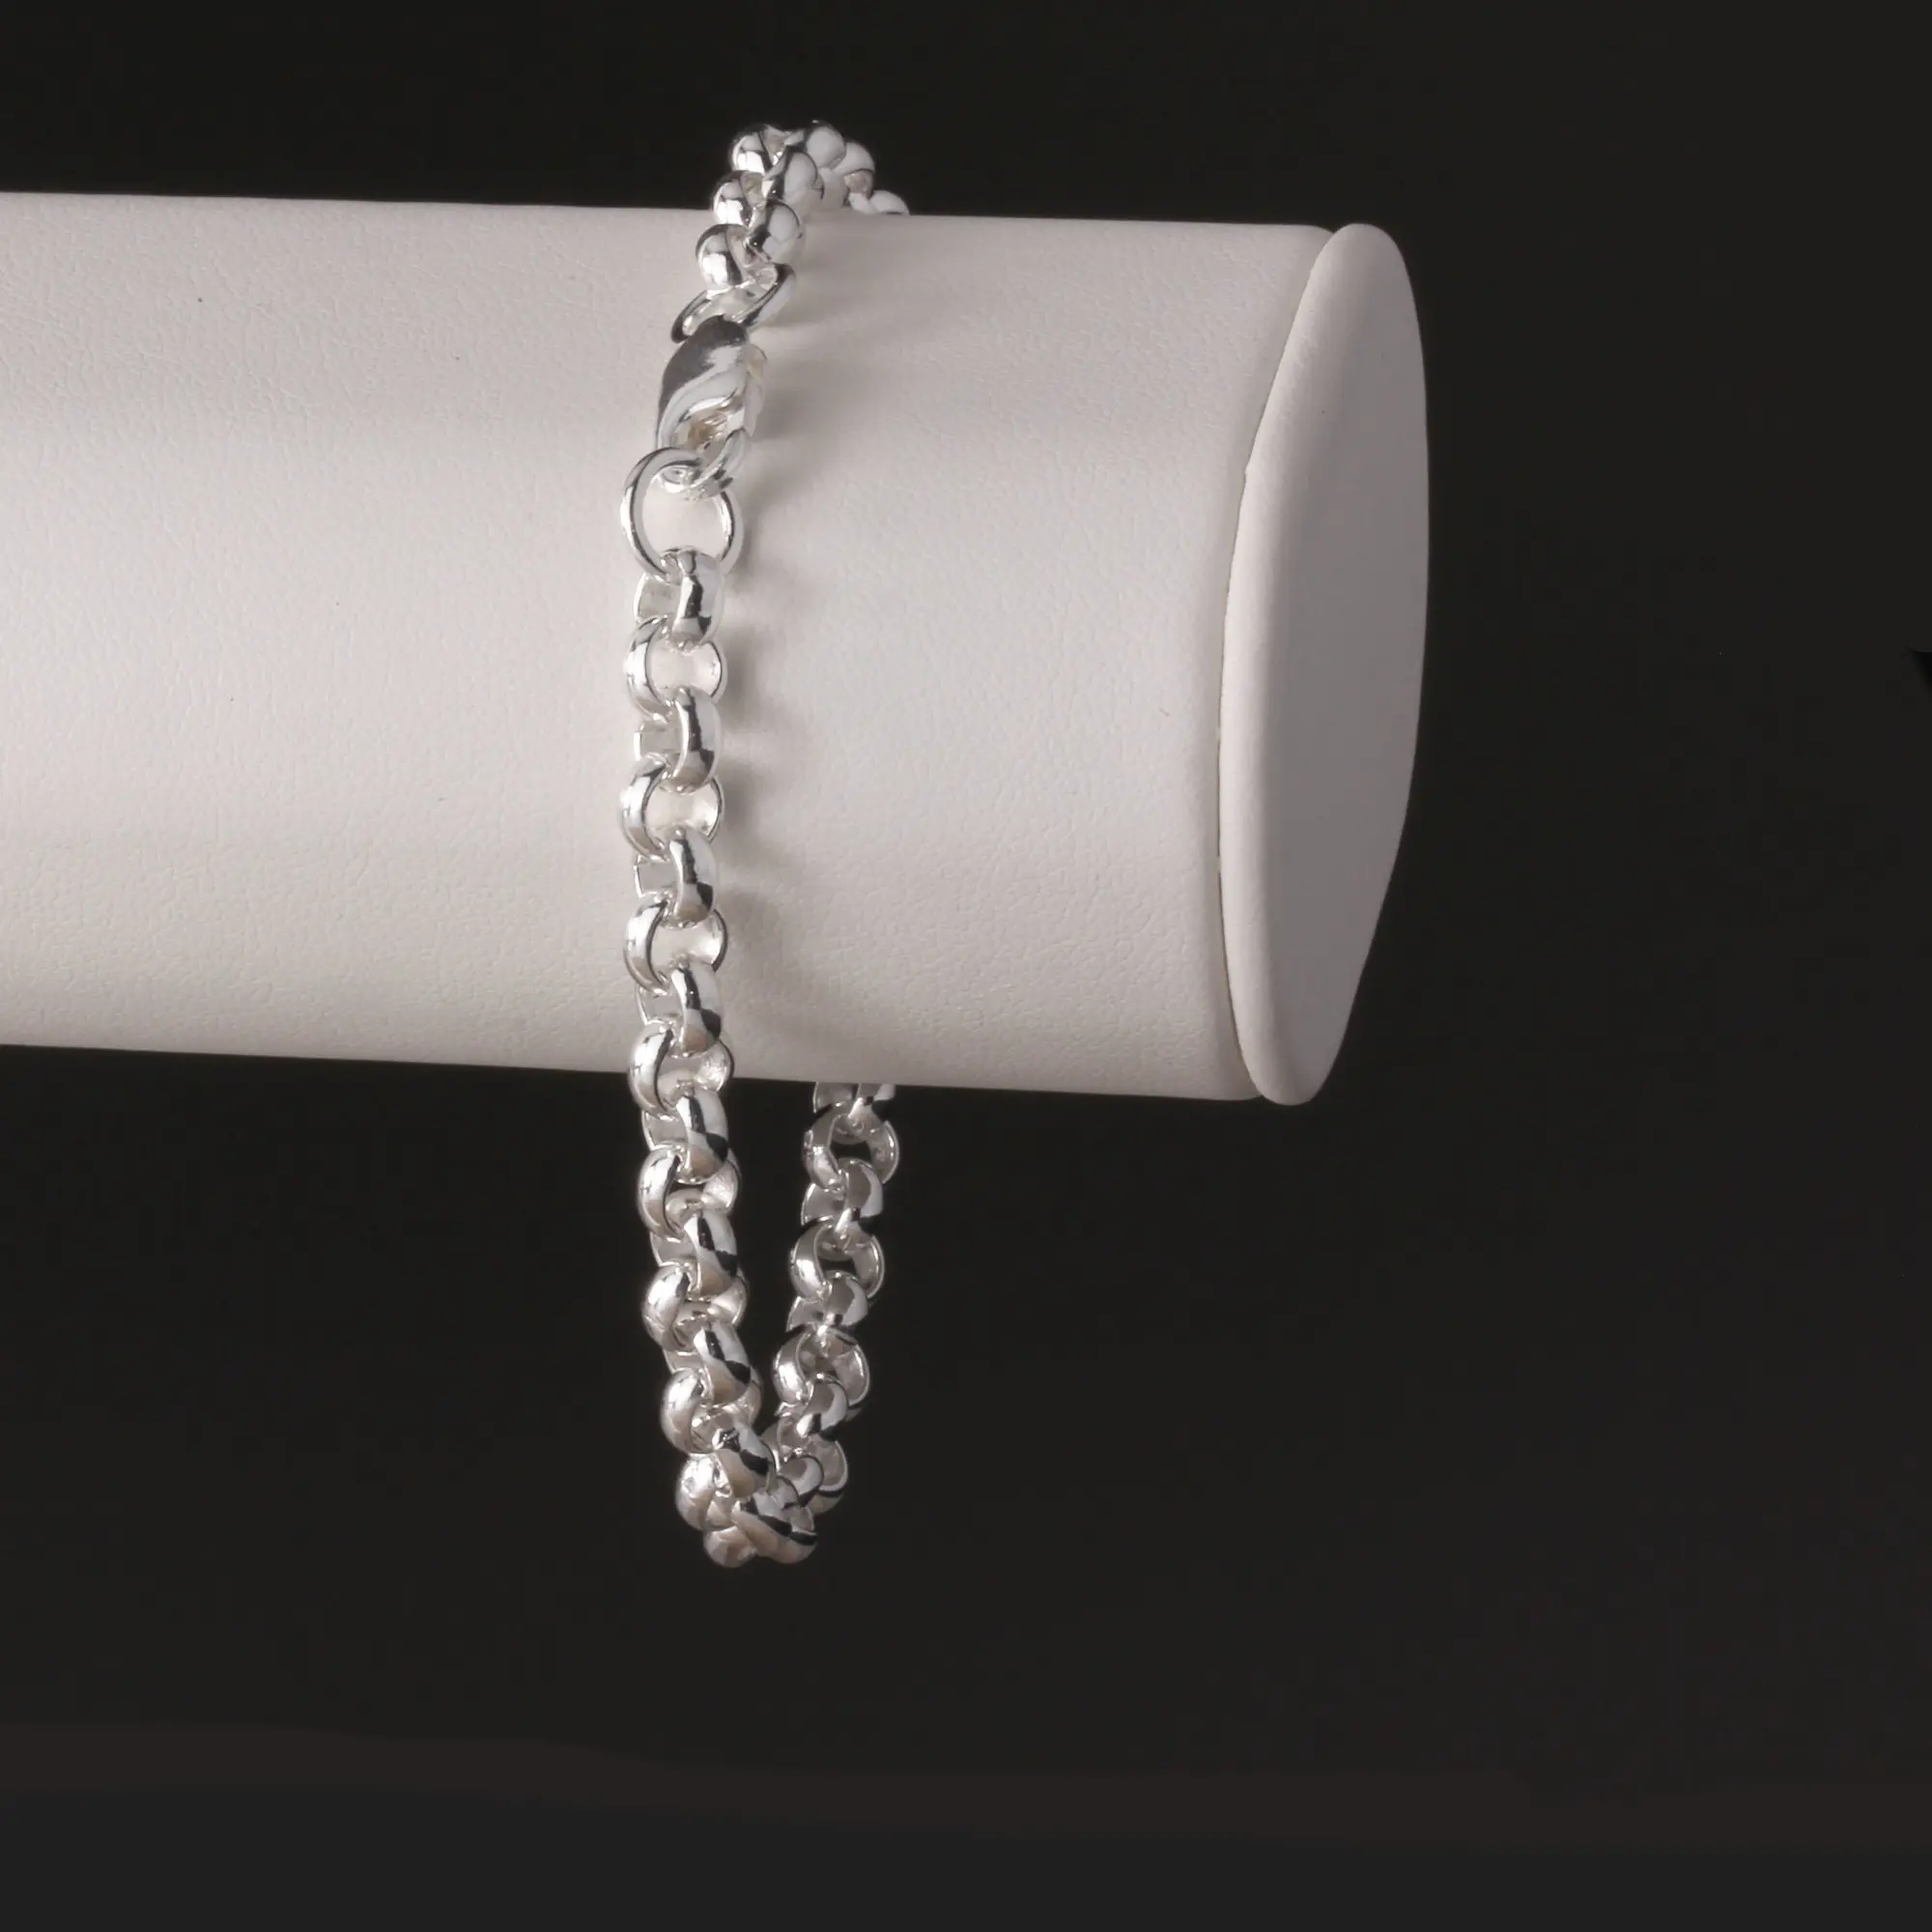 Engraved silver belcher bracelet – London Fifth Avenue jewellery